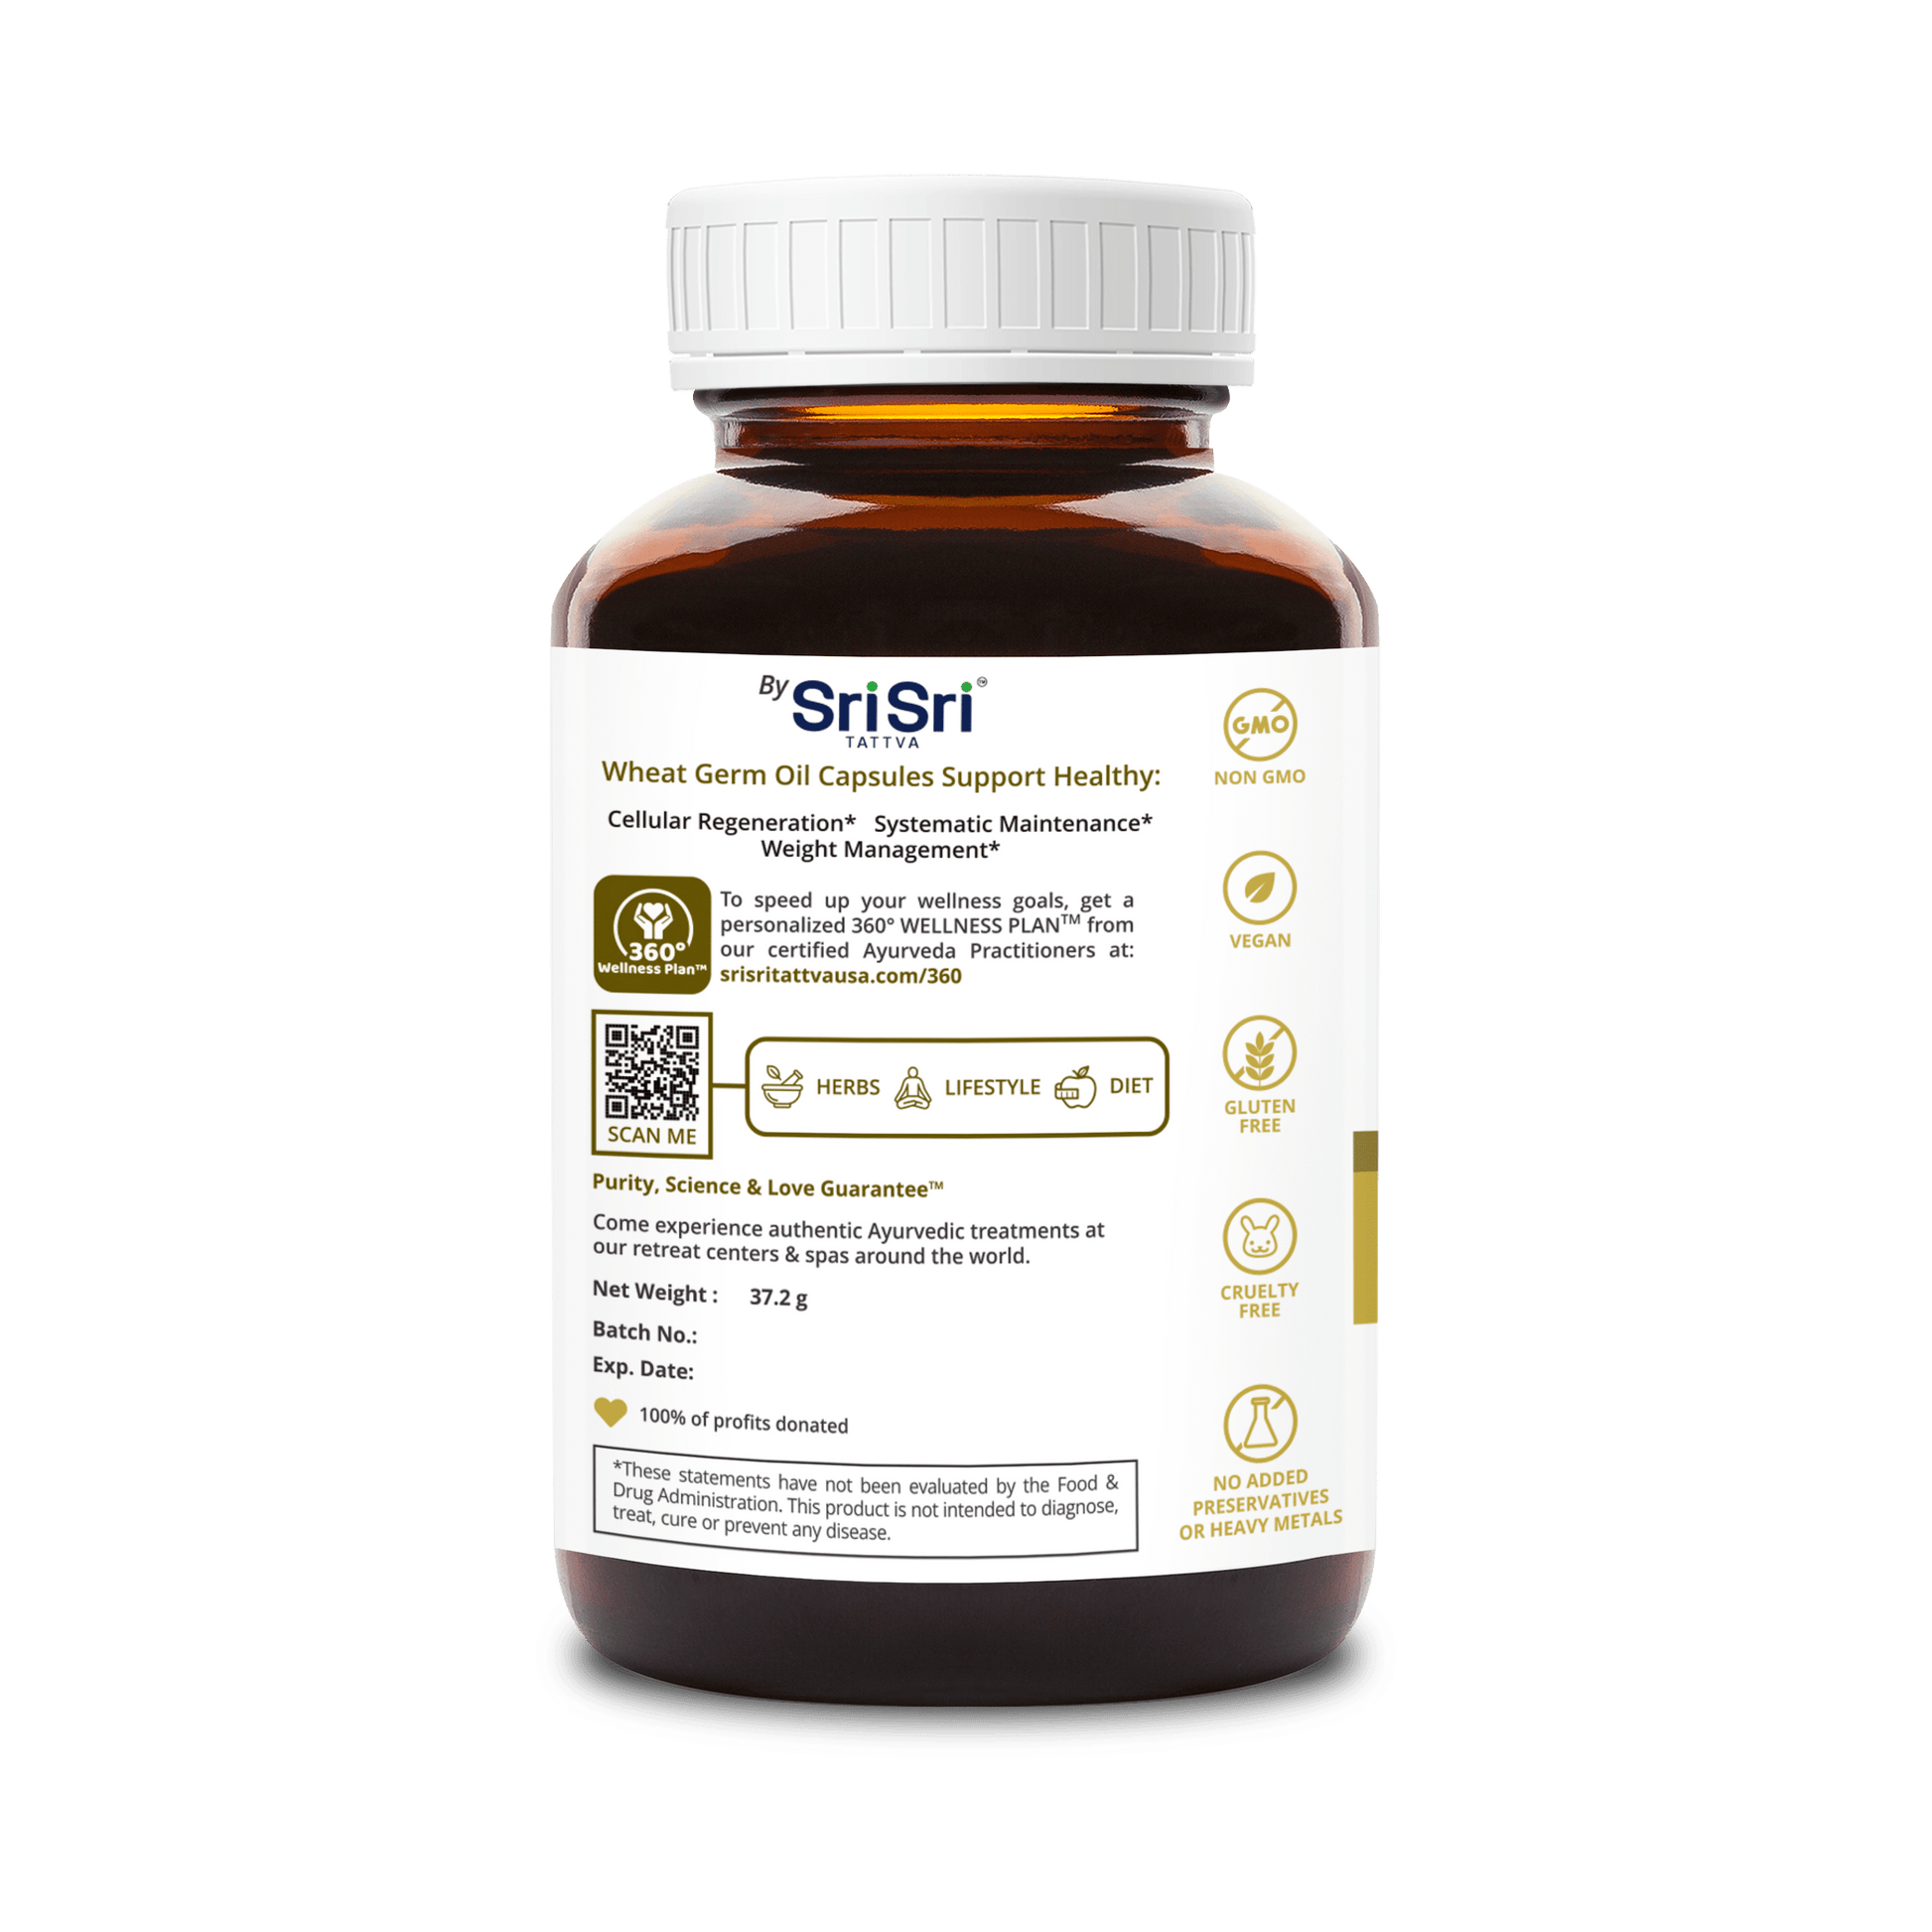 Sri Sri Tattva Herbs Vit E- Wheat Germ Oil